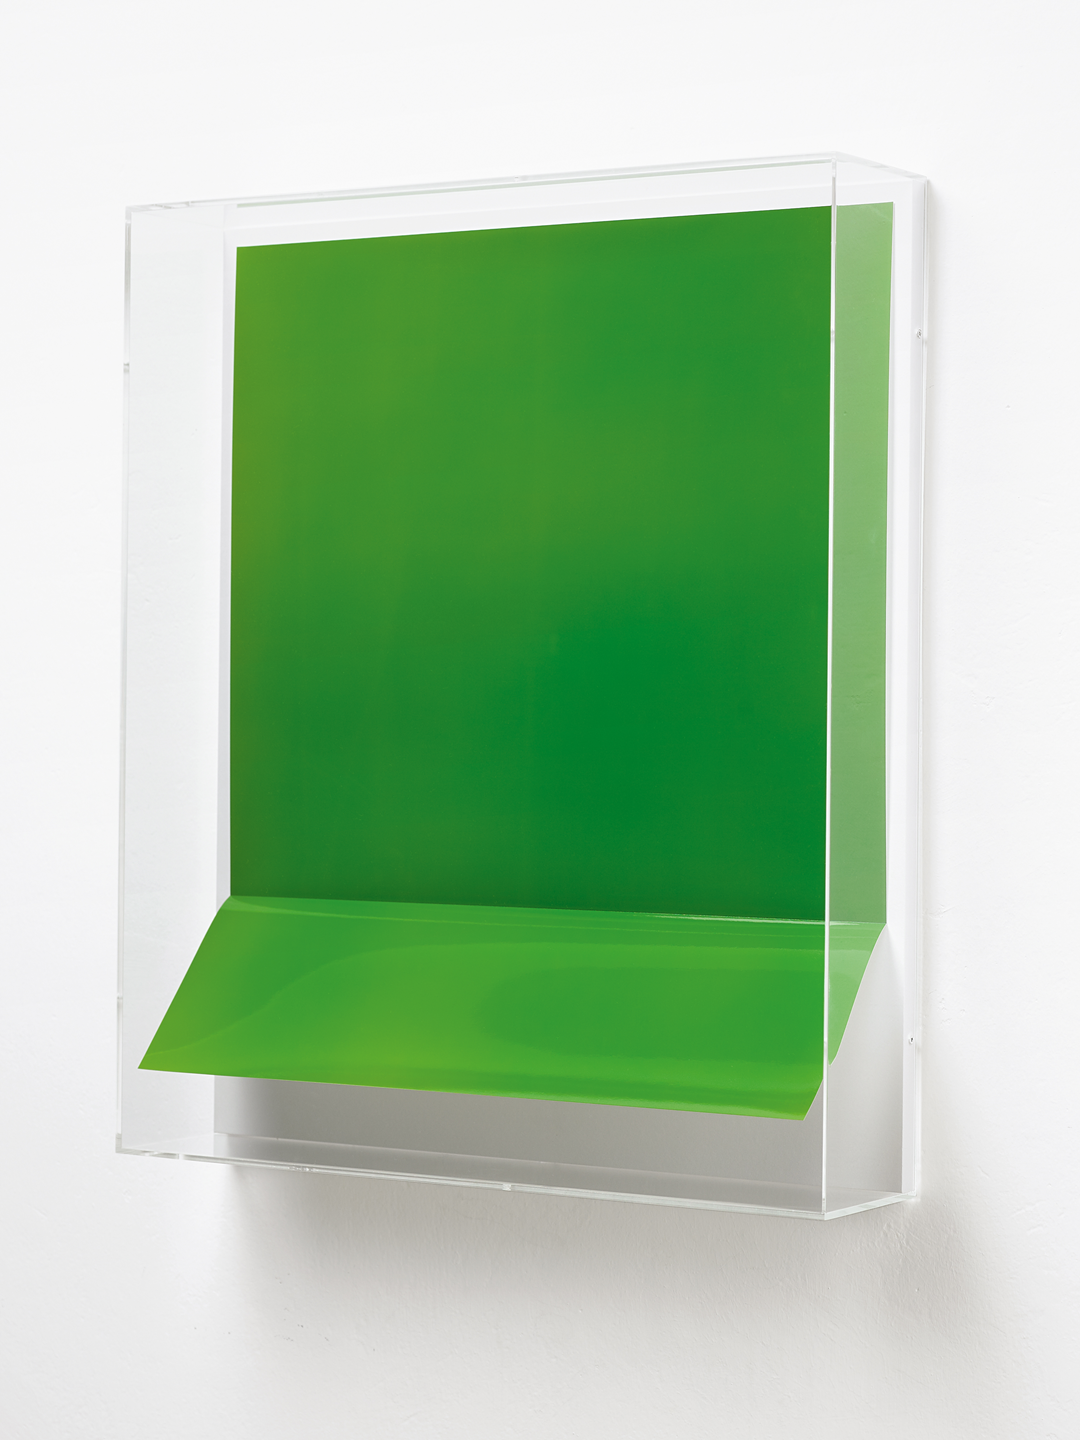 Lighter Green VI, 2010, by Wolfgang Tillmans